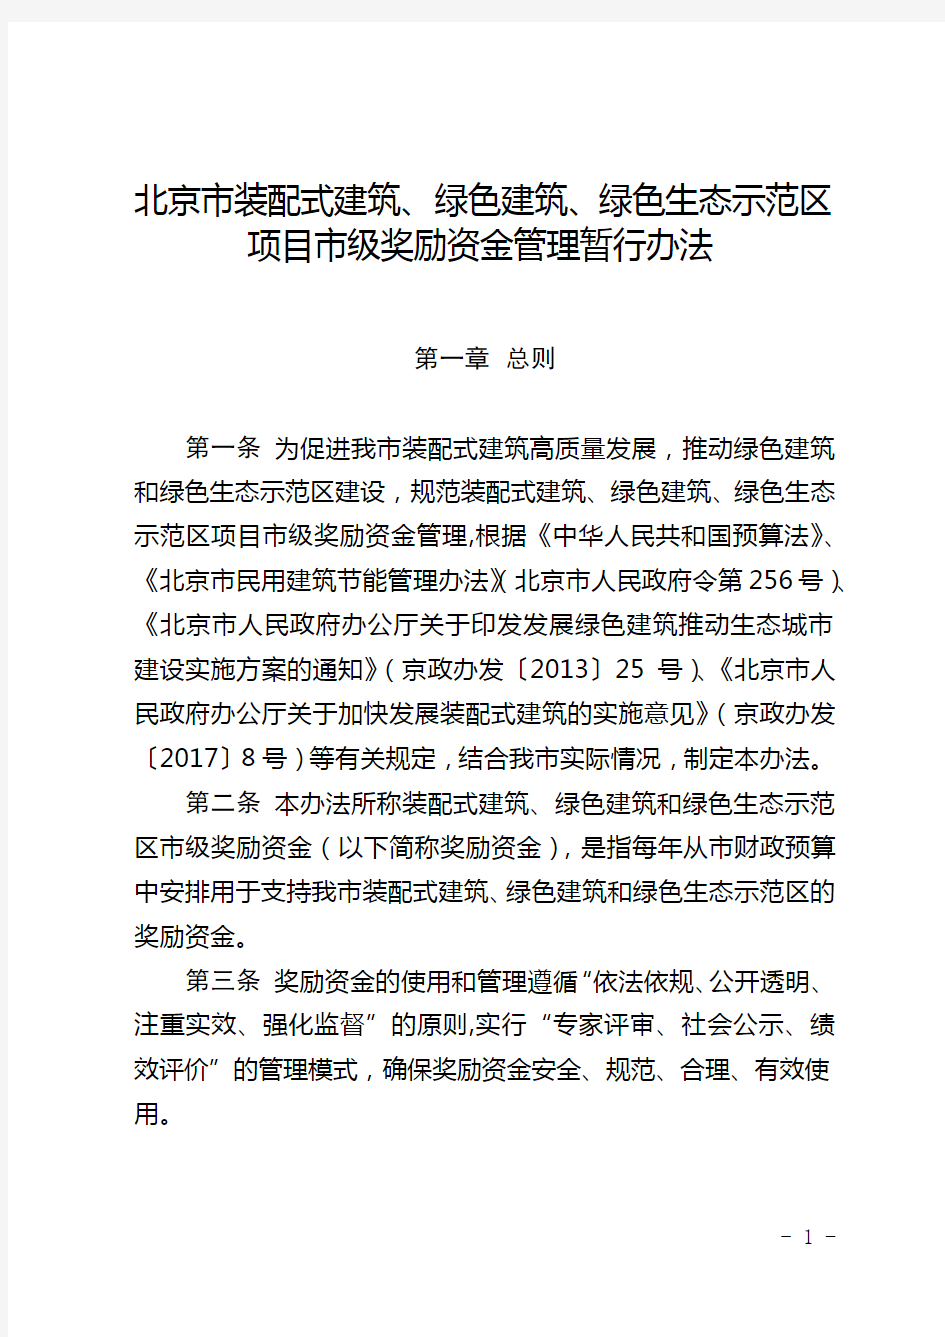 《北京市装配式建筑、绿色建筑、绿色生态示范区项目市级奖励资金管理暂行办法》